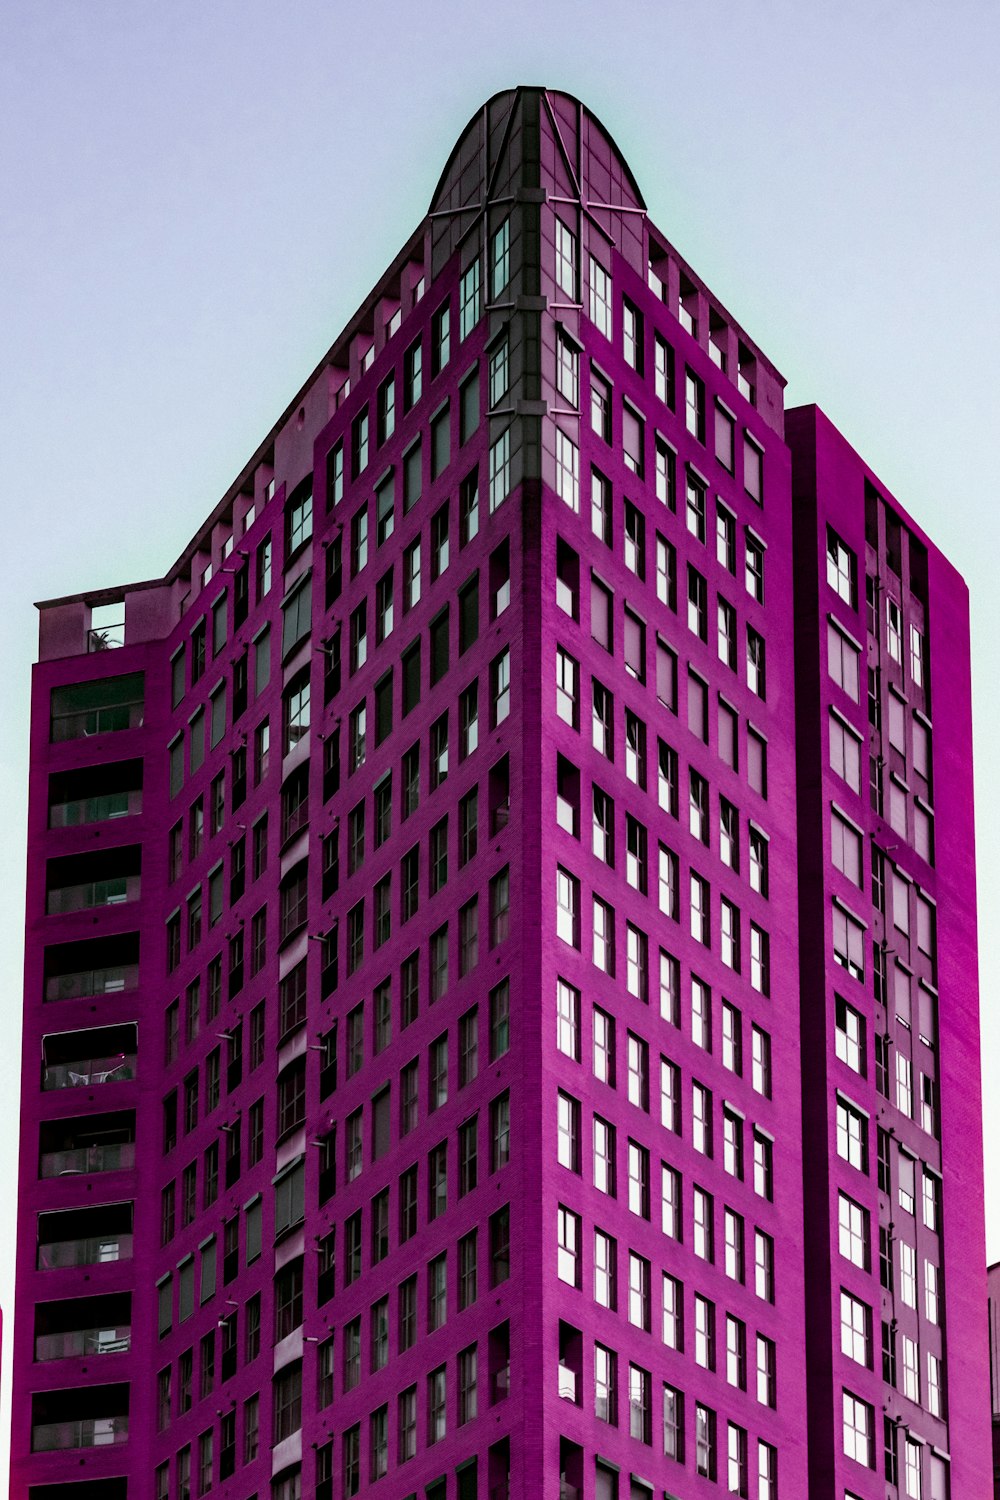 Edificio de hormigón rosa y blanco